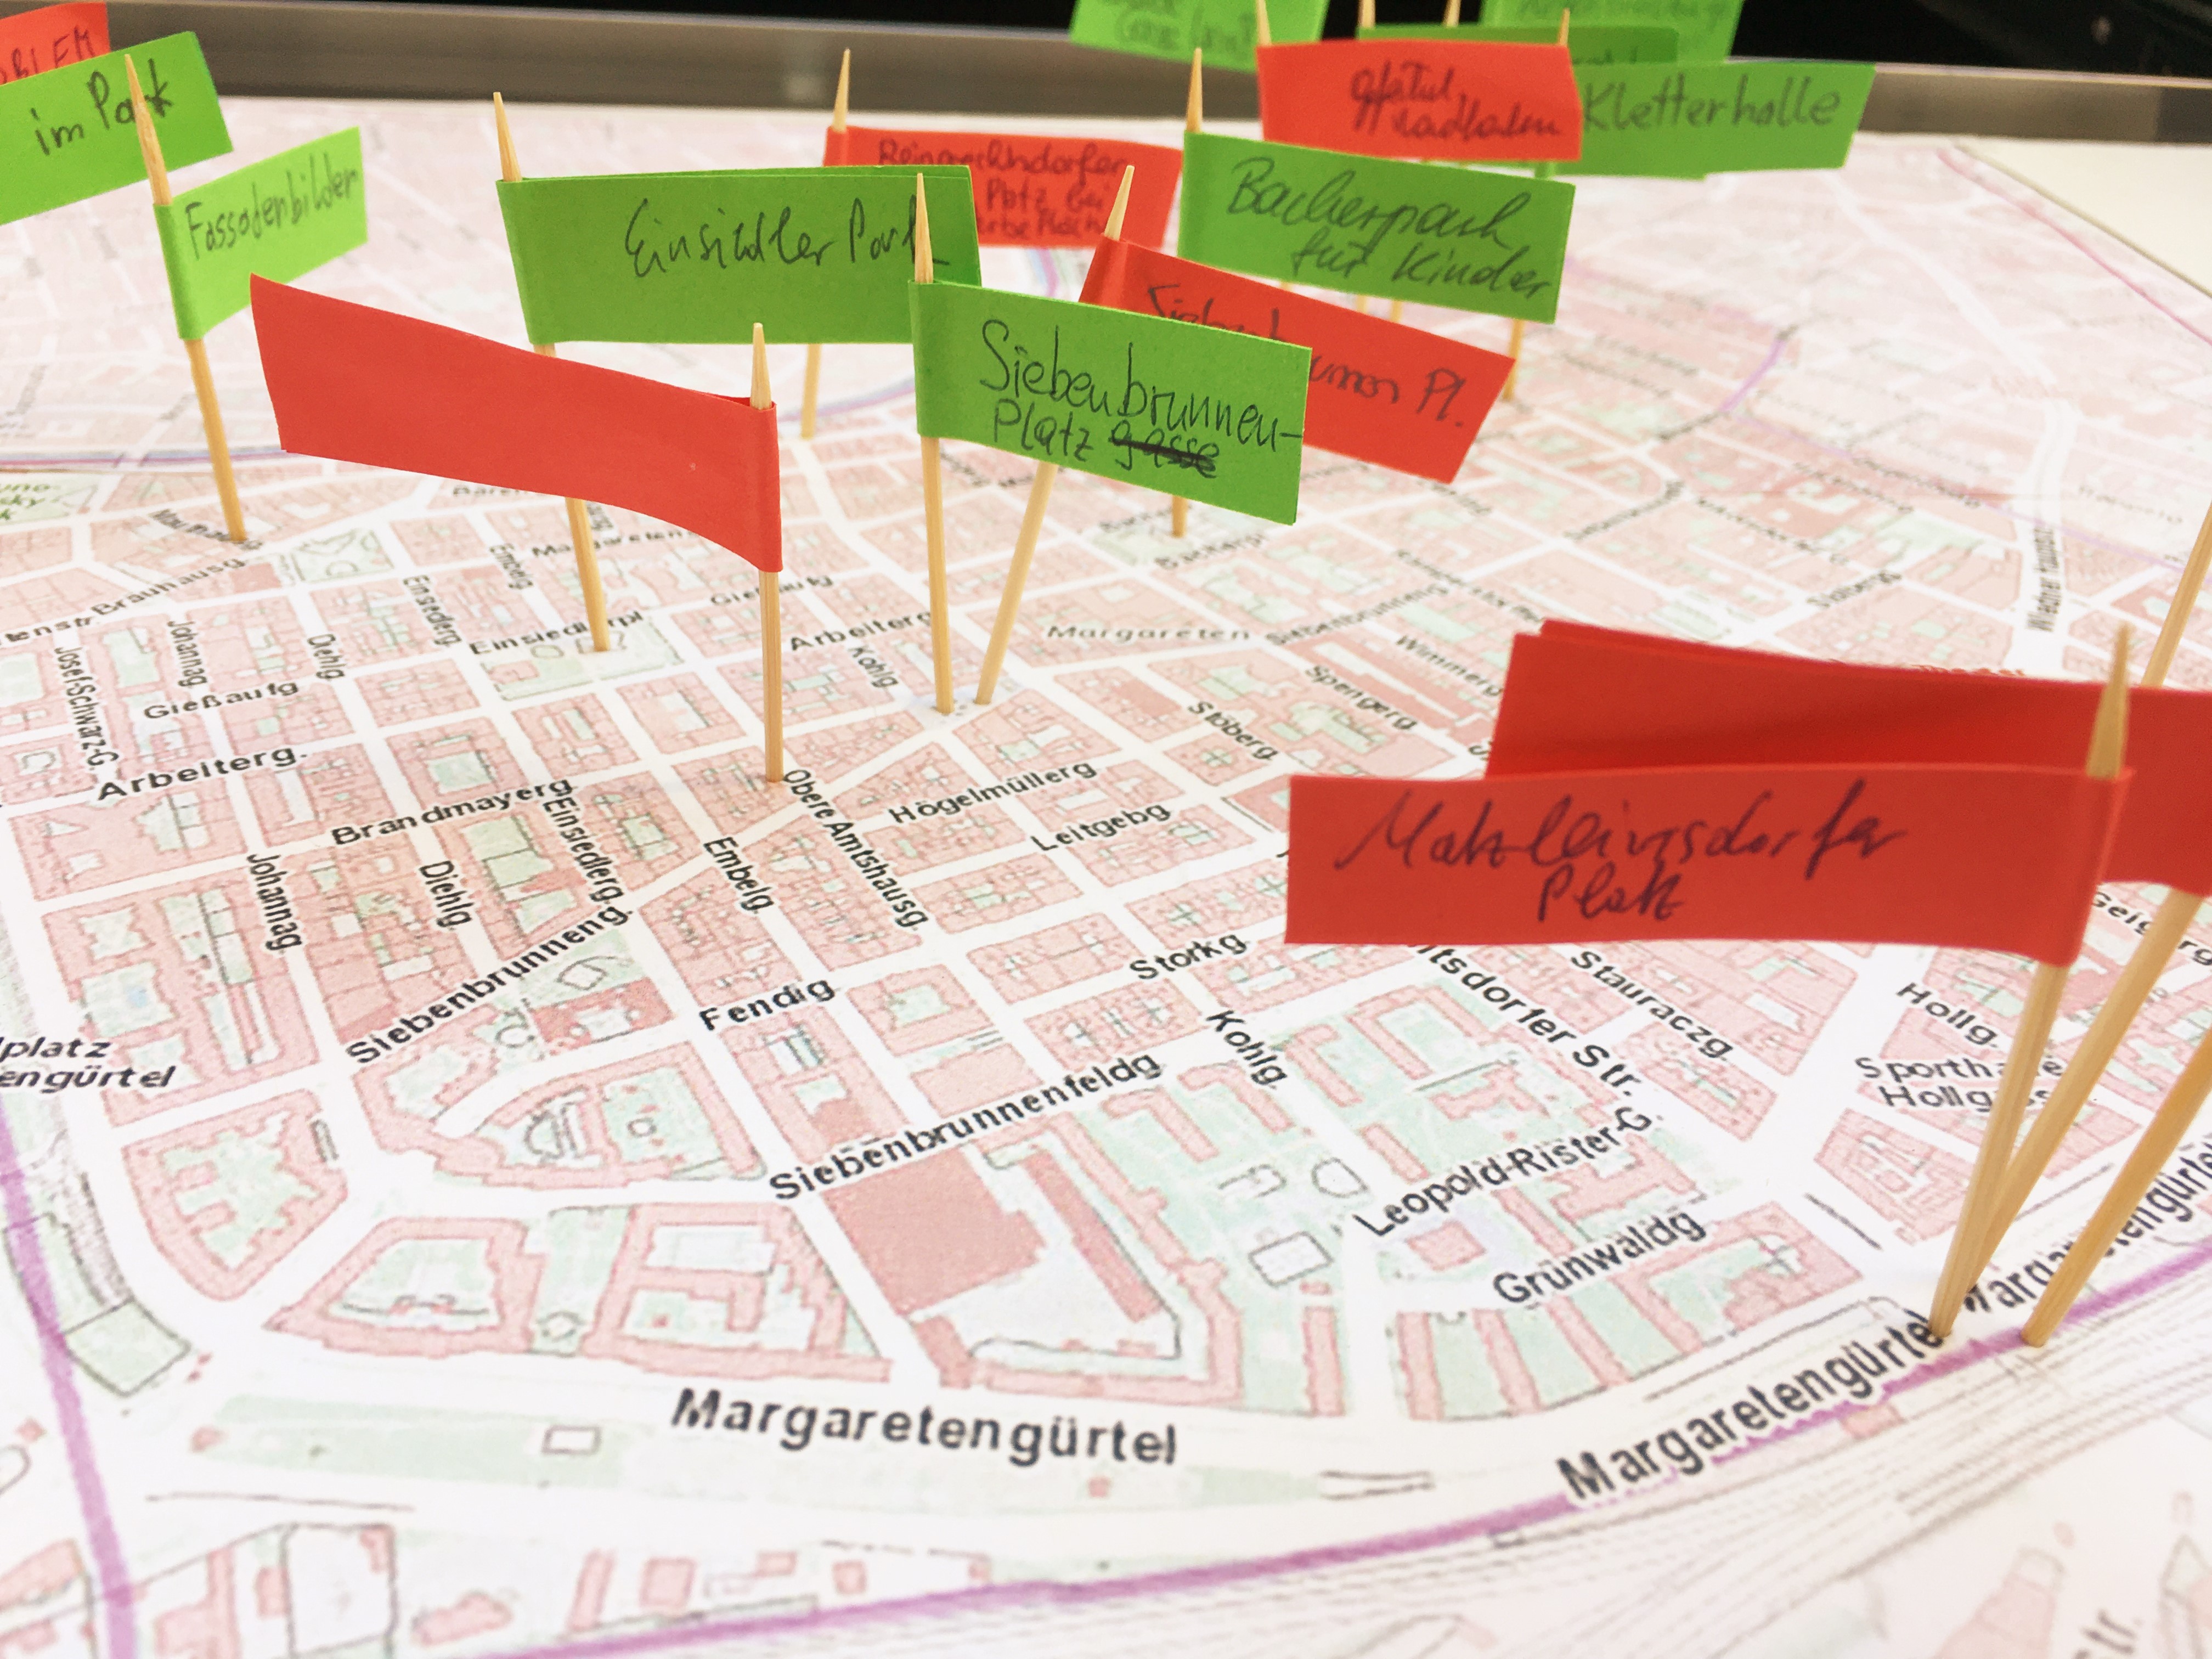 Stadtplan Wien Margareten mit Hervorhebungen zur Agenda